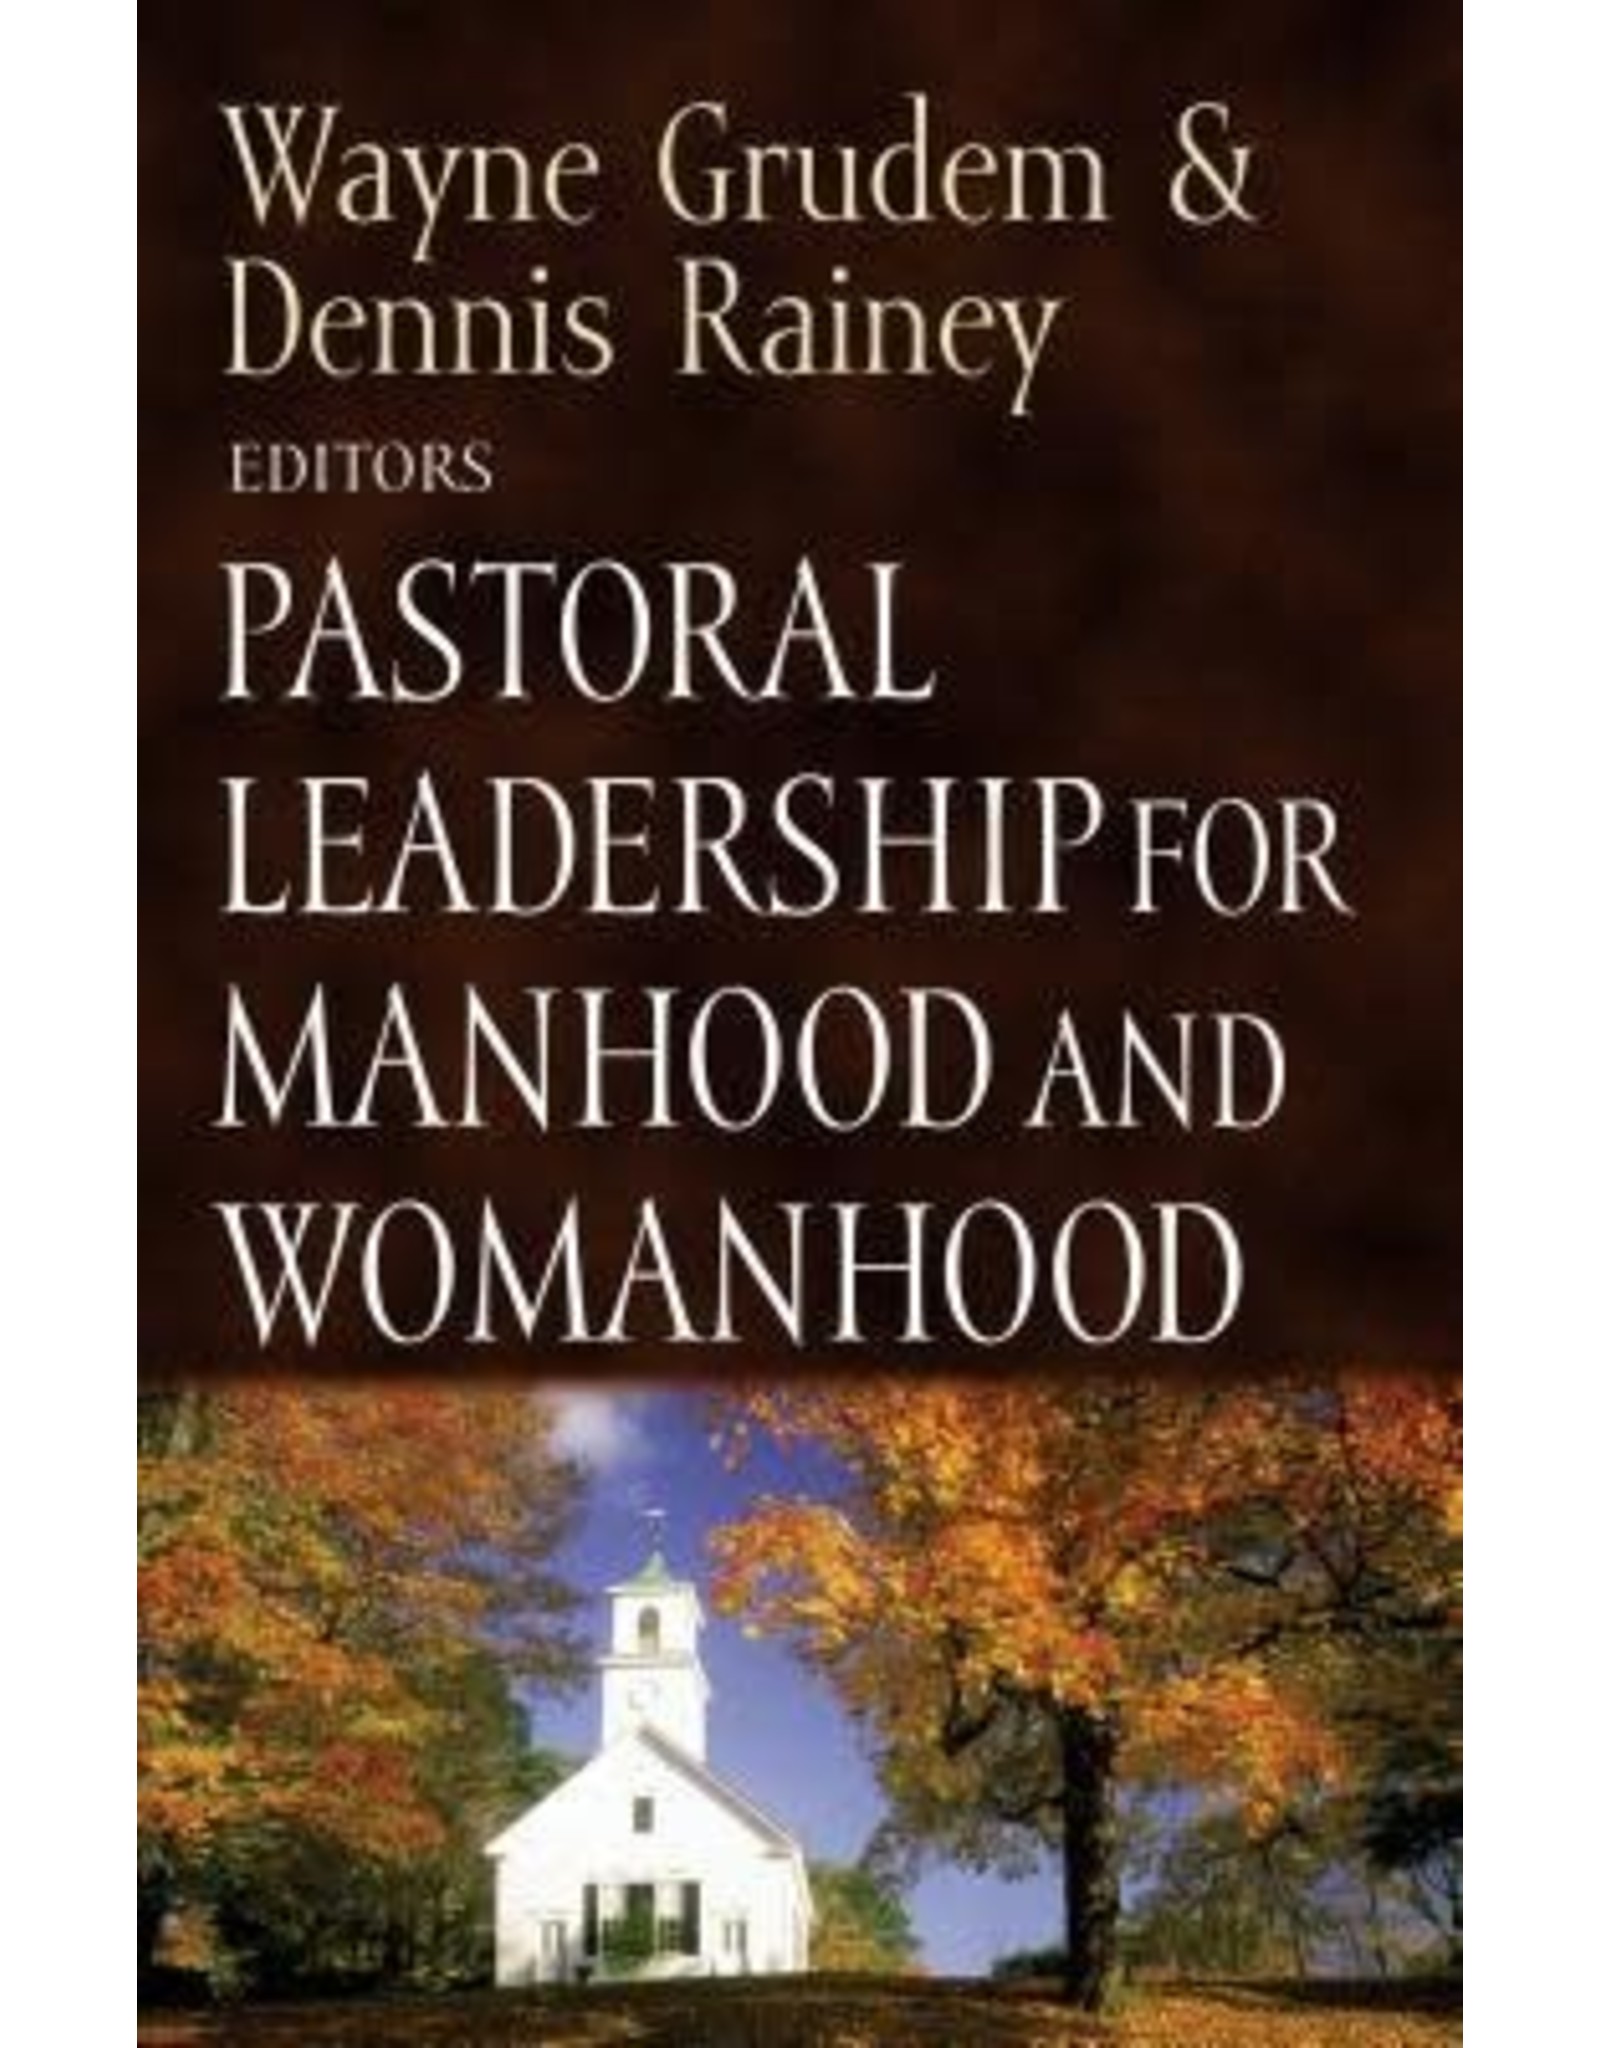 Wayne & Dennis Rainey Grudem Pastoral Leadership for Manhood and Womanhood